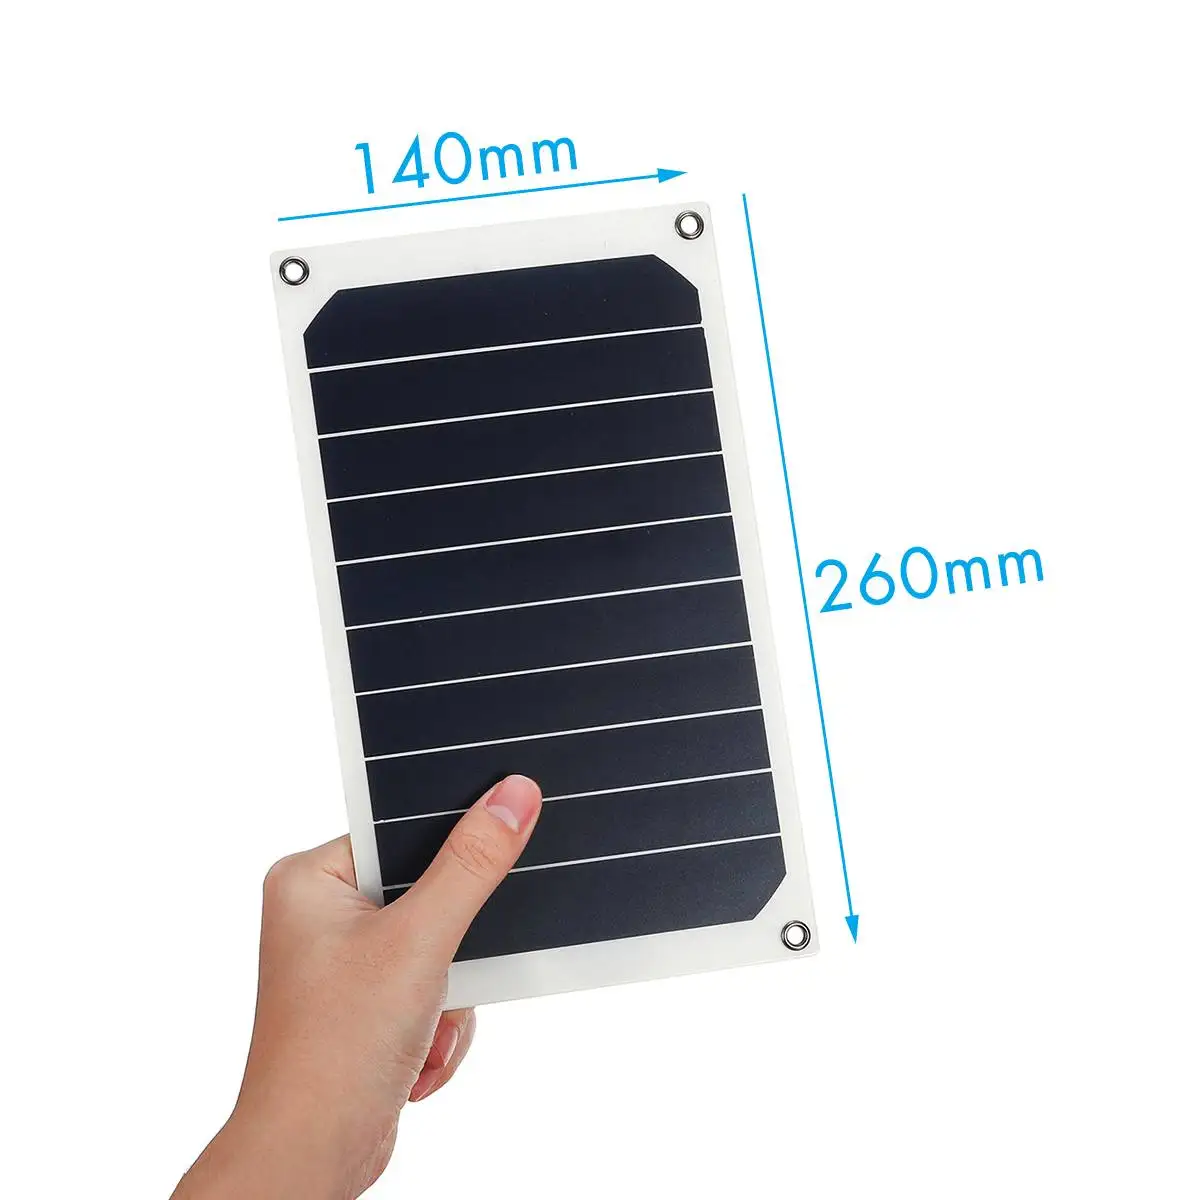 KINCO 12V 6V Гибкая панель солнечных батарей 10W Солнечное зарядное устройство для автомобиля батарея для зарядки телефона Sunpower монокристаллические ячейки